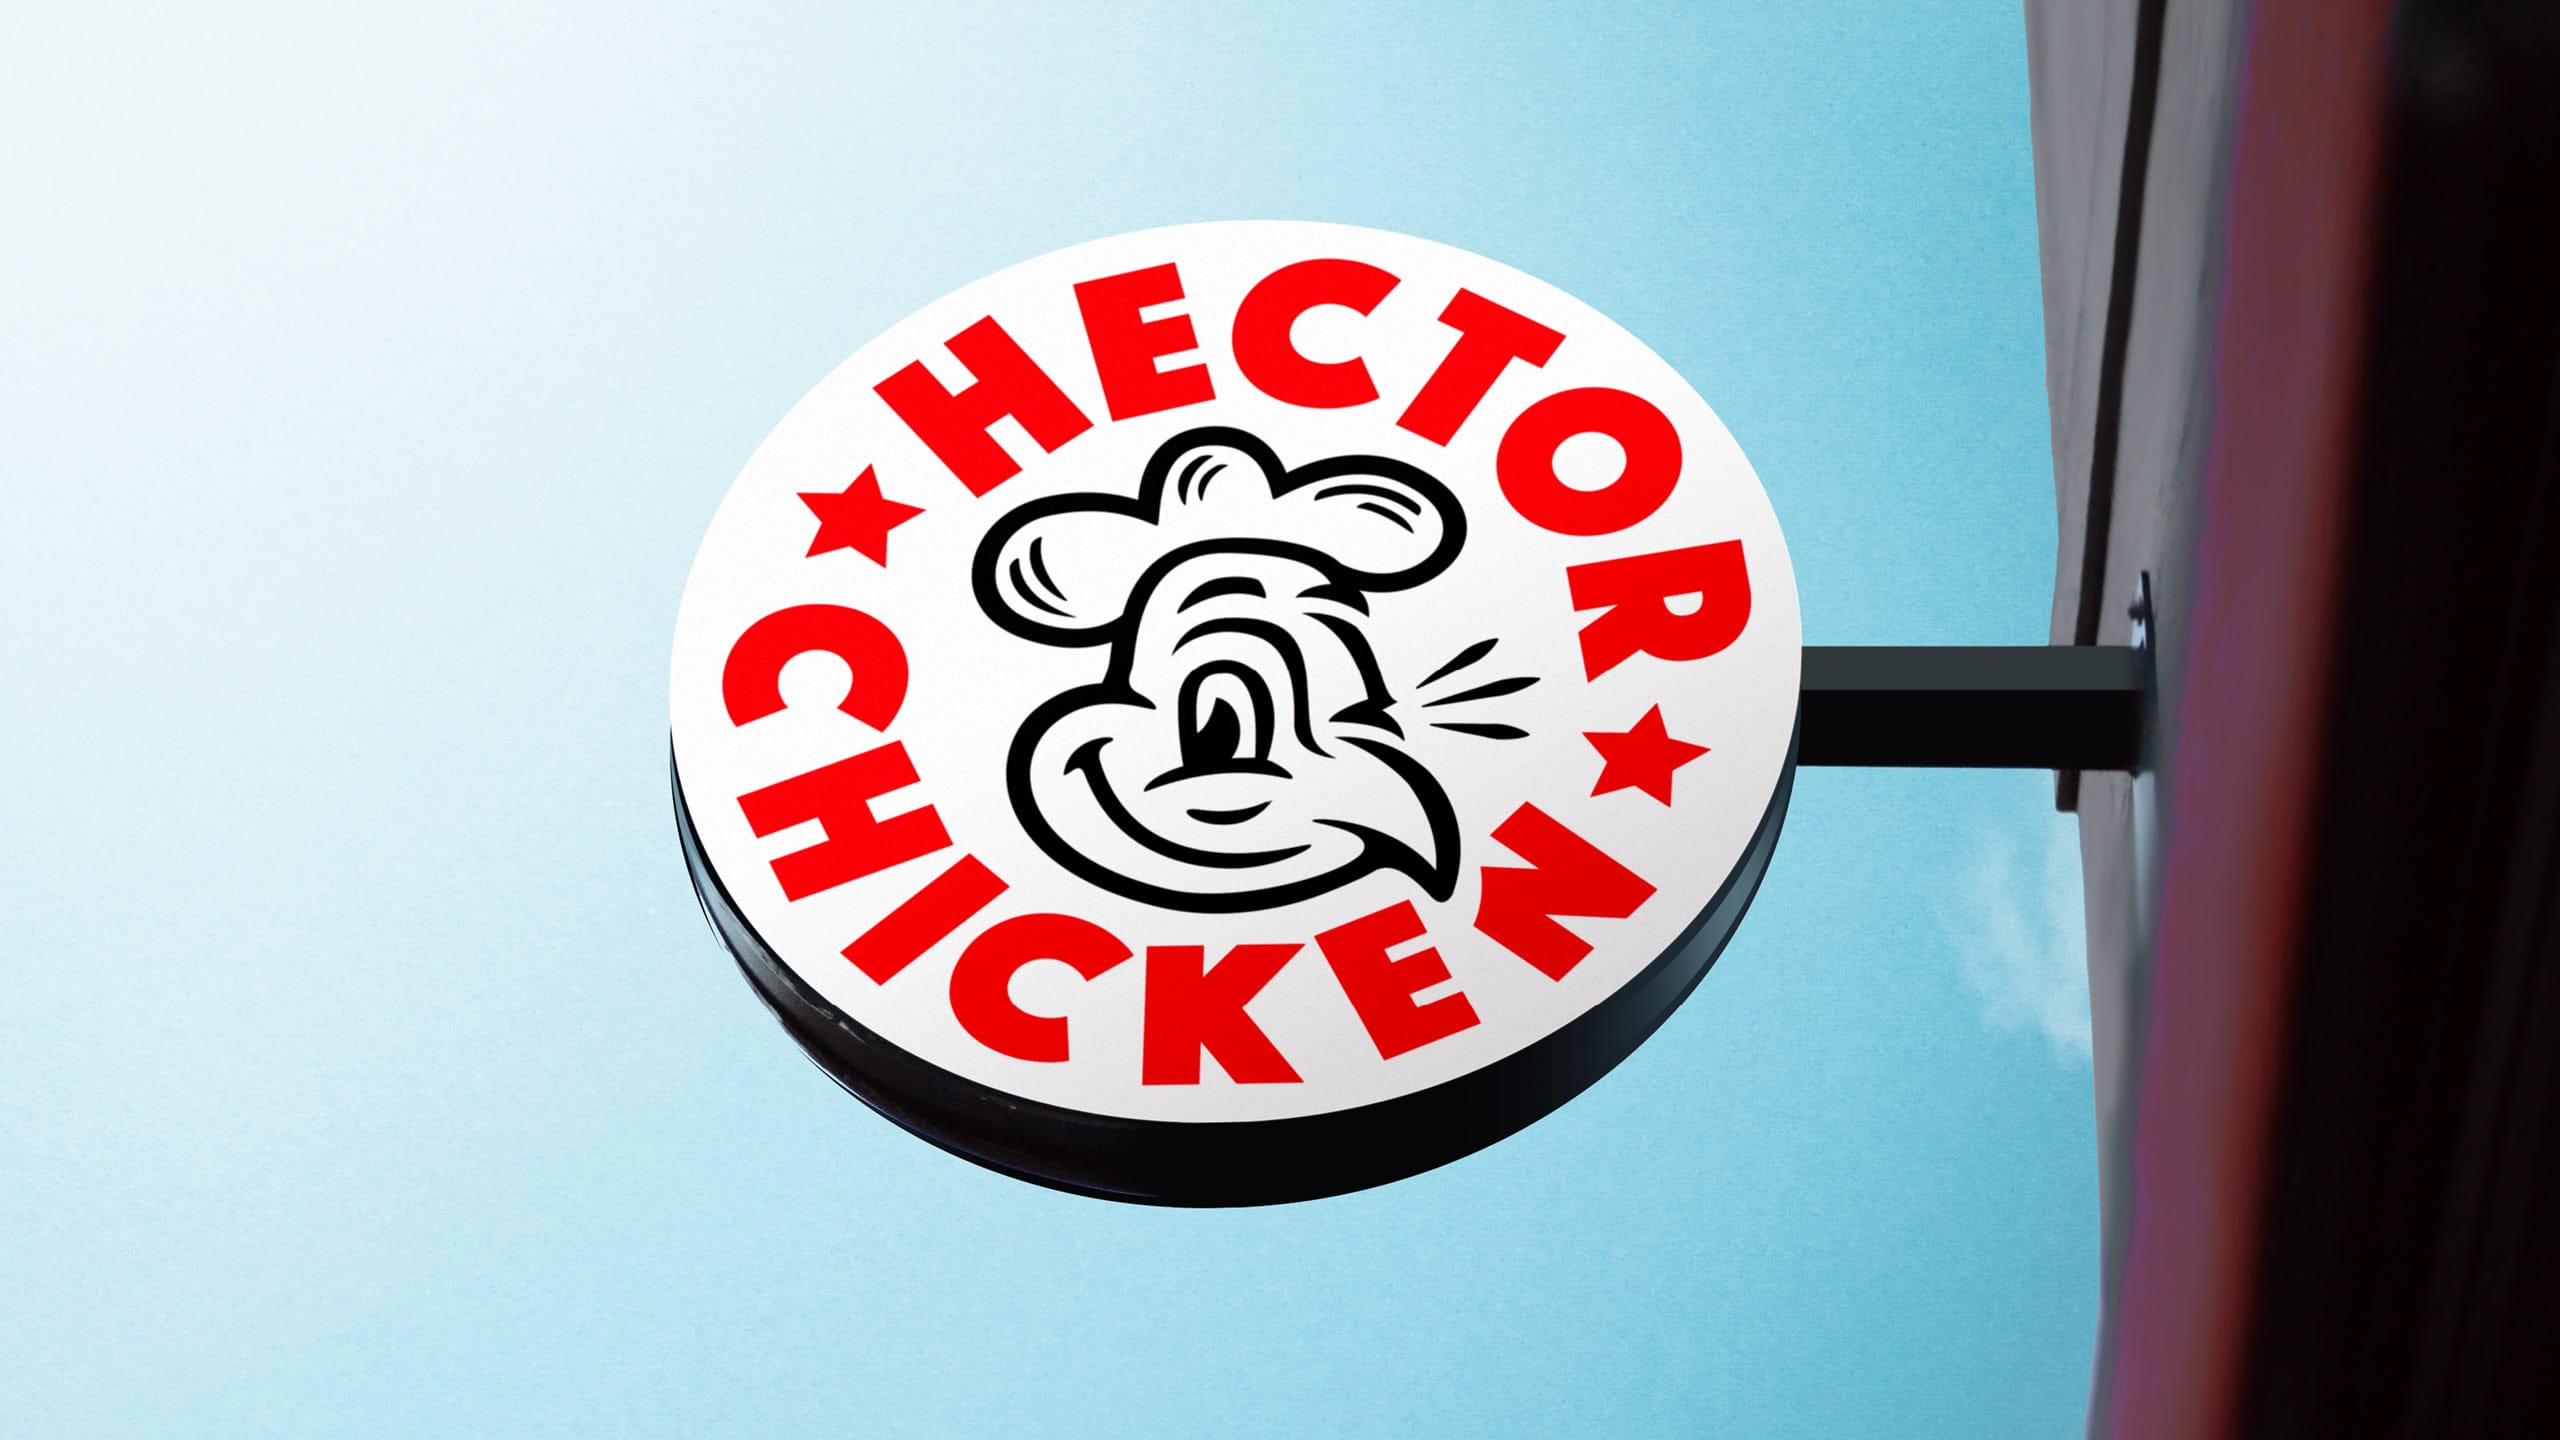 Hector-chicken-branding-signage